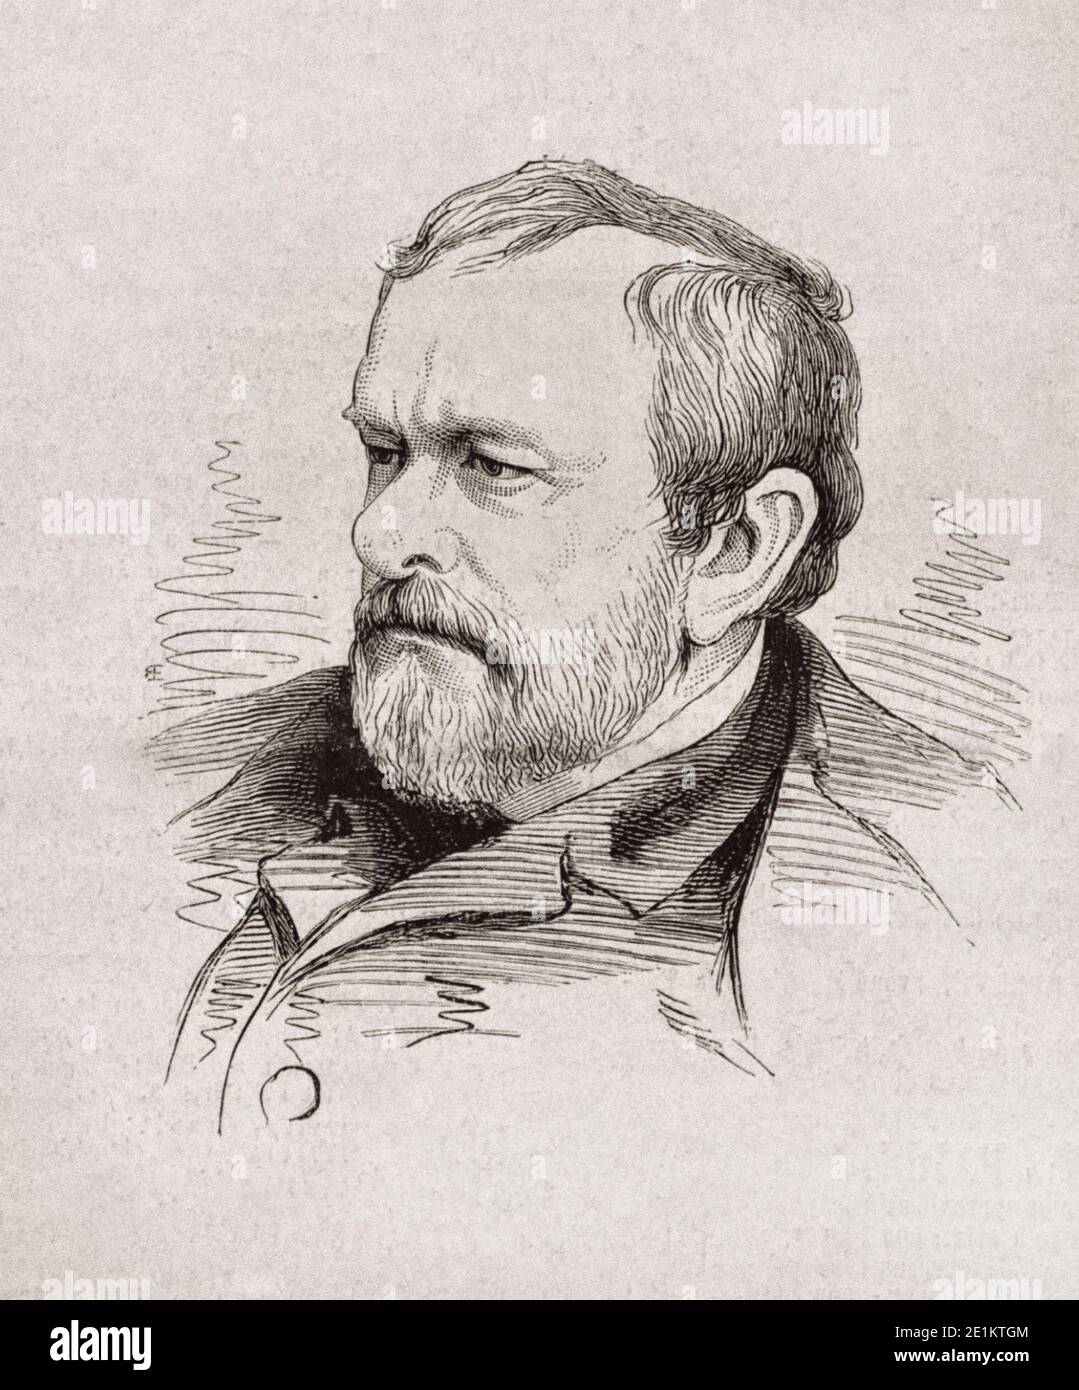 Illustrazione archivistica di John Harper, fondatore del settimanale Harper. 1875 Harper's Weekly, A Journal of Civilization, è stato un magazi politico americano Foto Stock